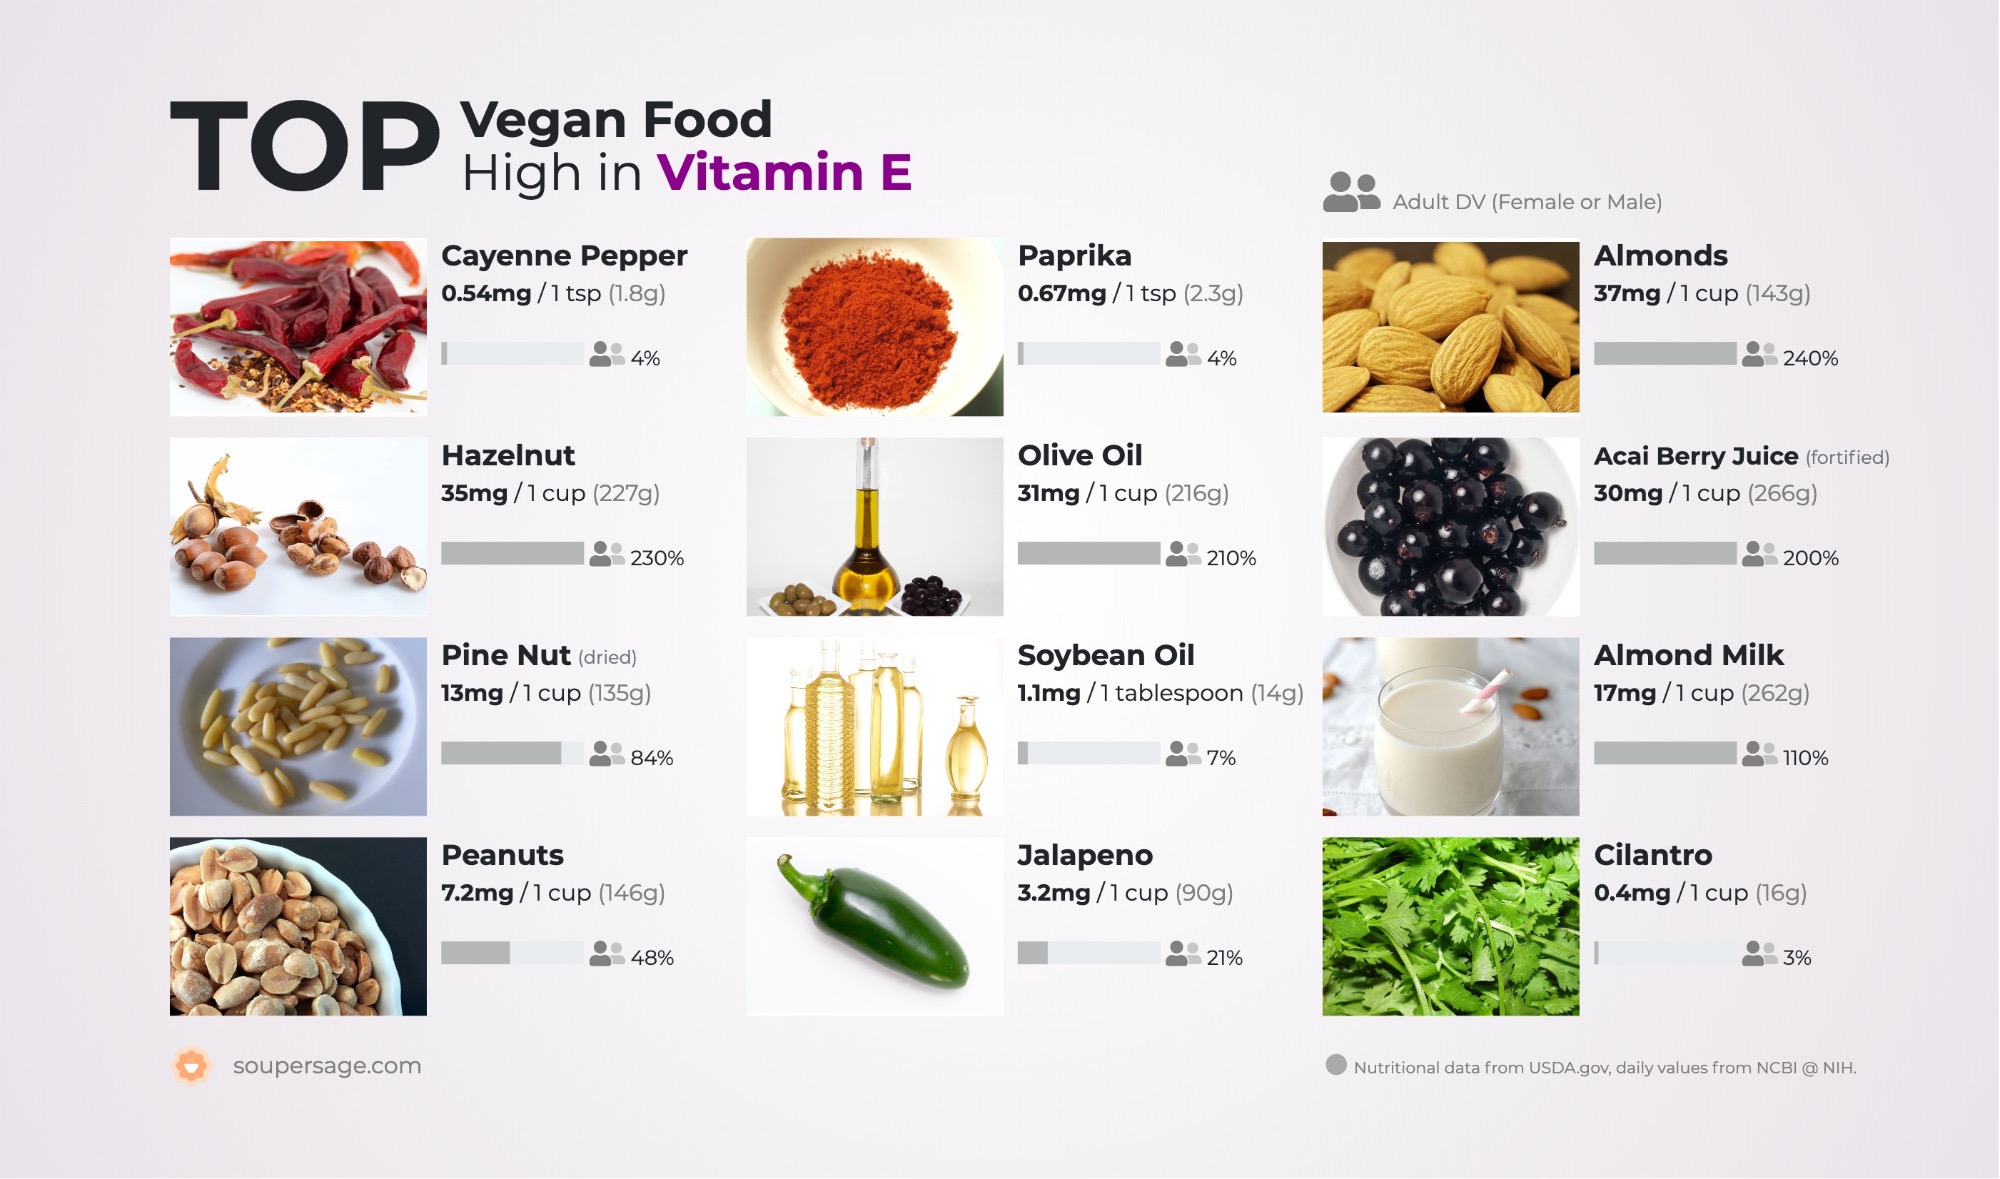 Top Vegan High in Vitamin